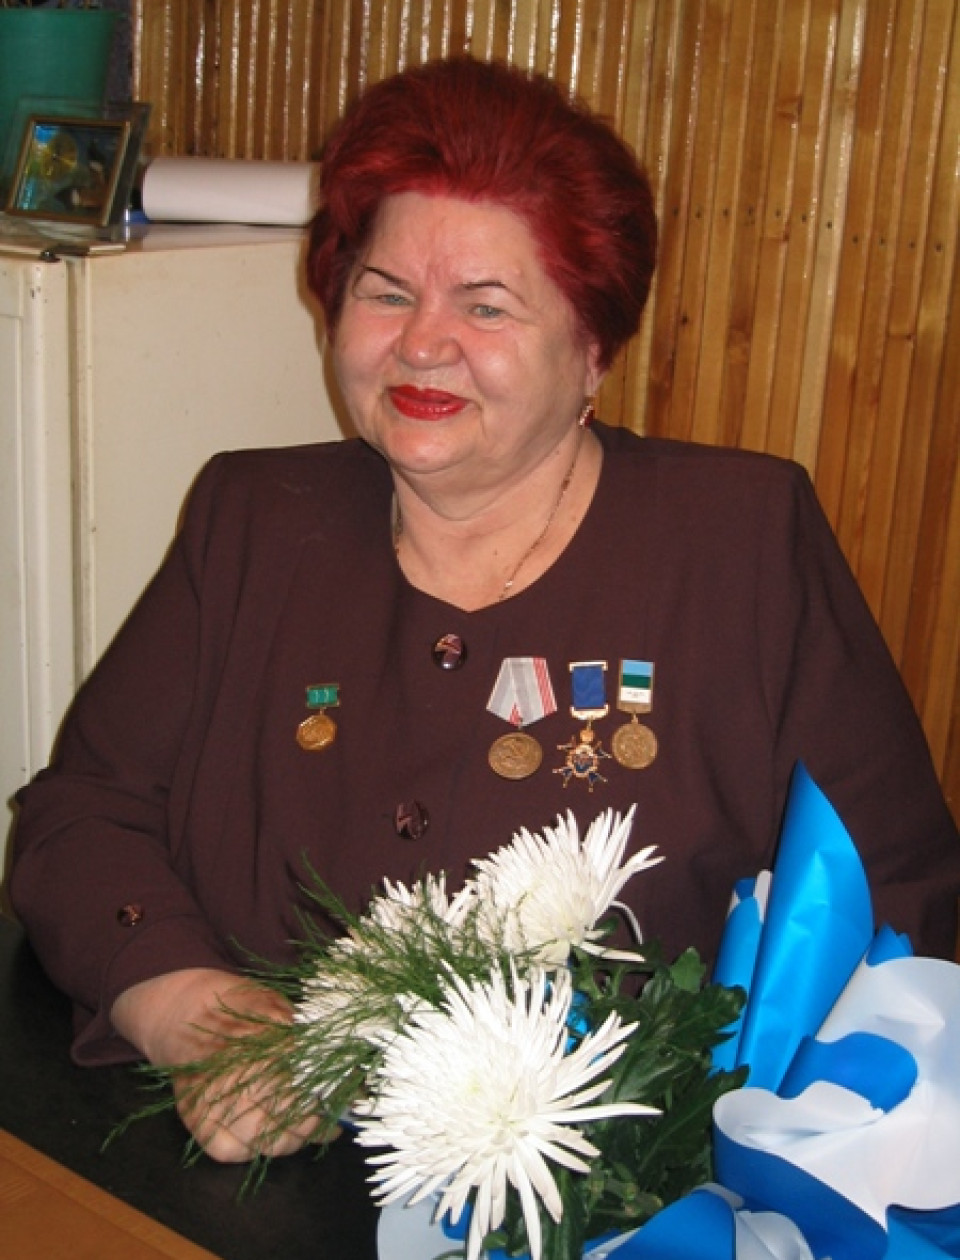 Алла Михайловна